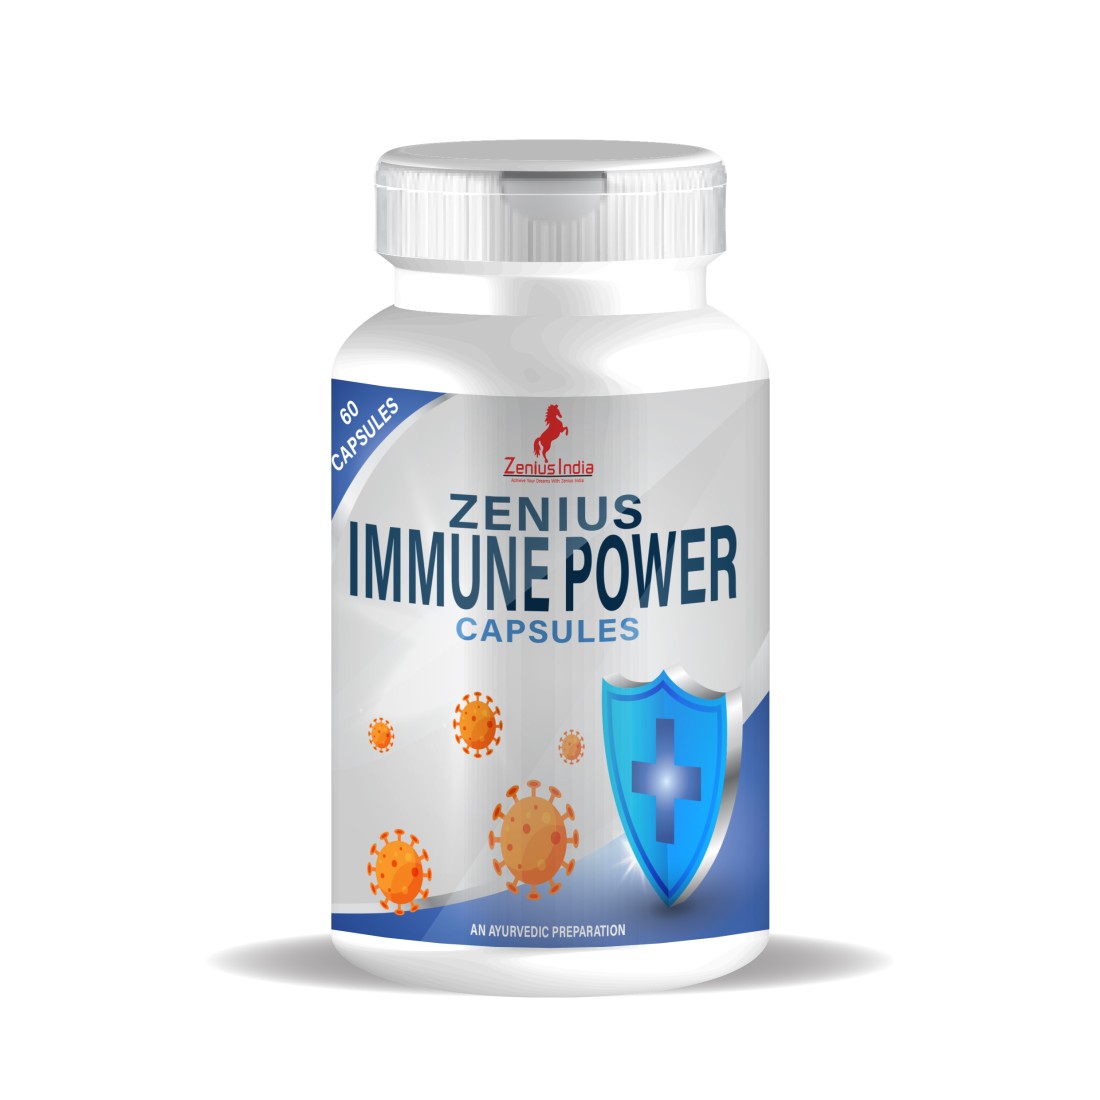 Buy Zenius Immune Power Capsule at Best Price Online